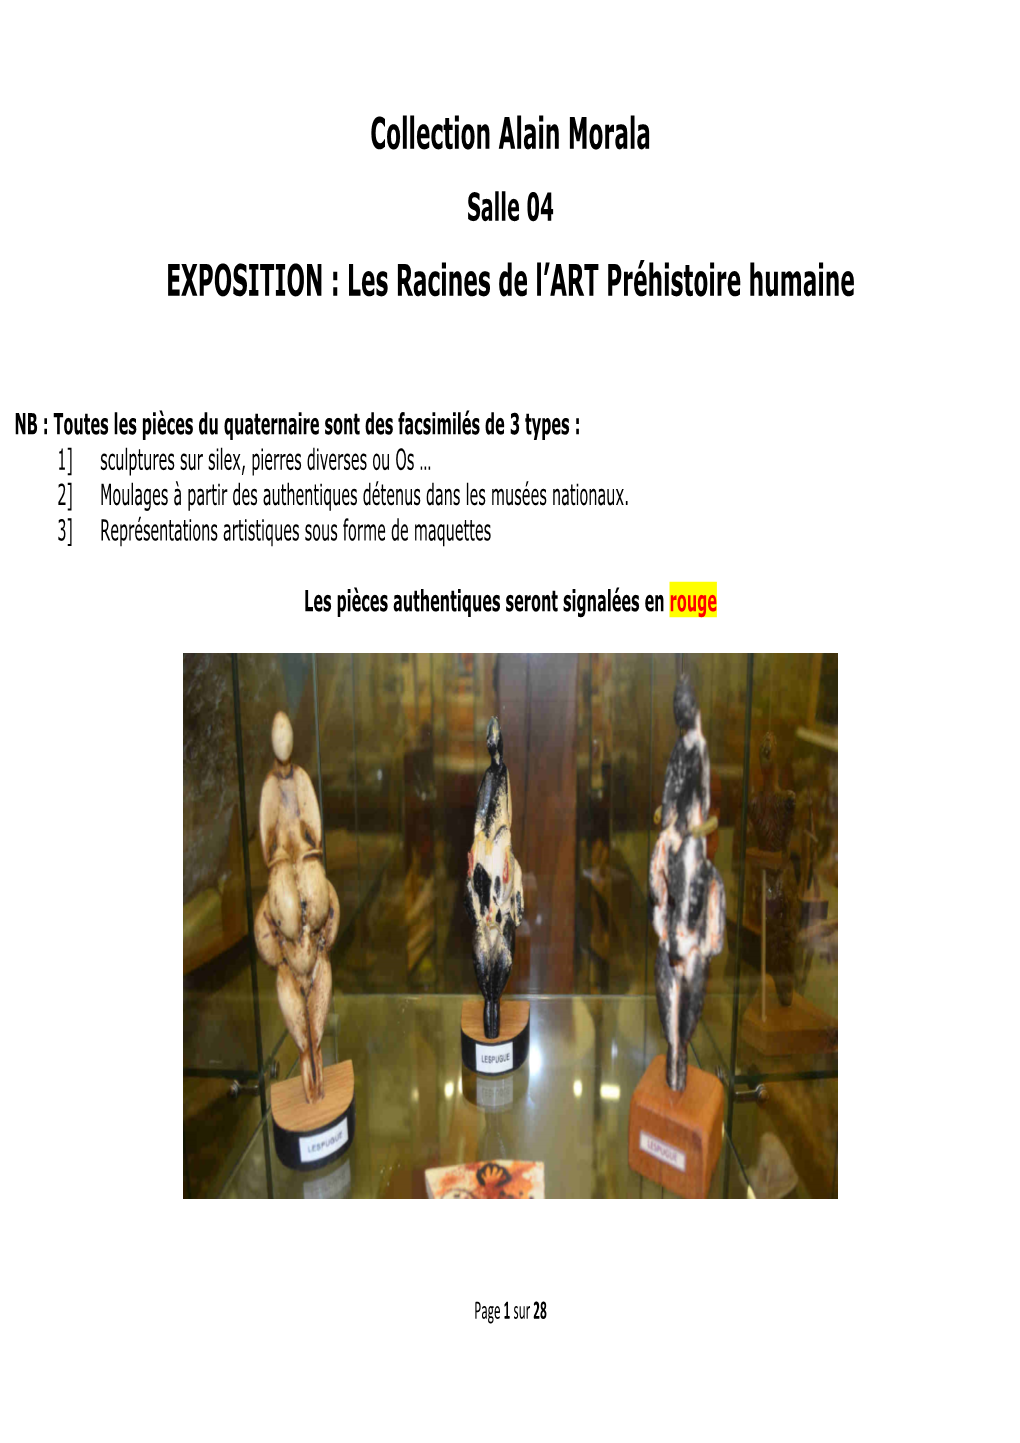 Collection Alain Morala EXPOSITION : Les Racines De L'art Préhistoire